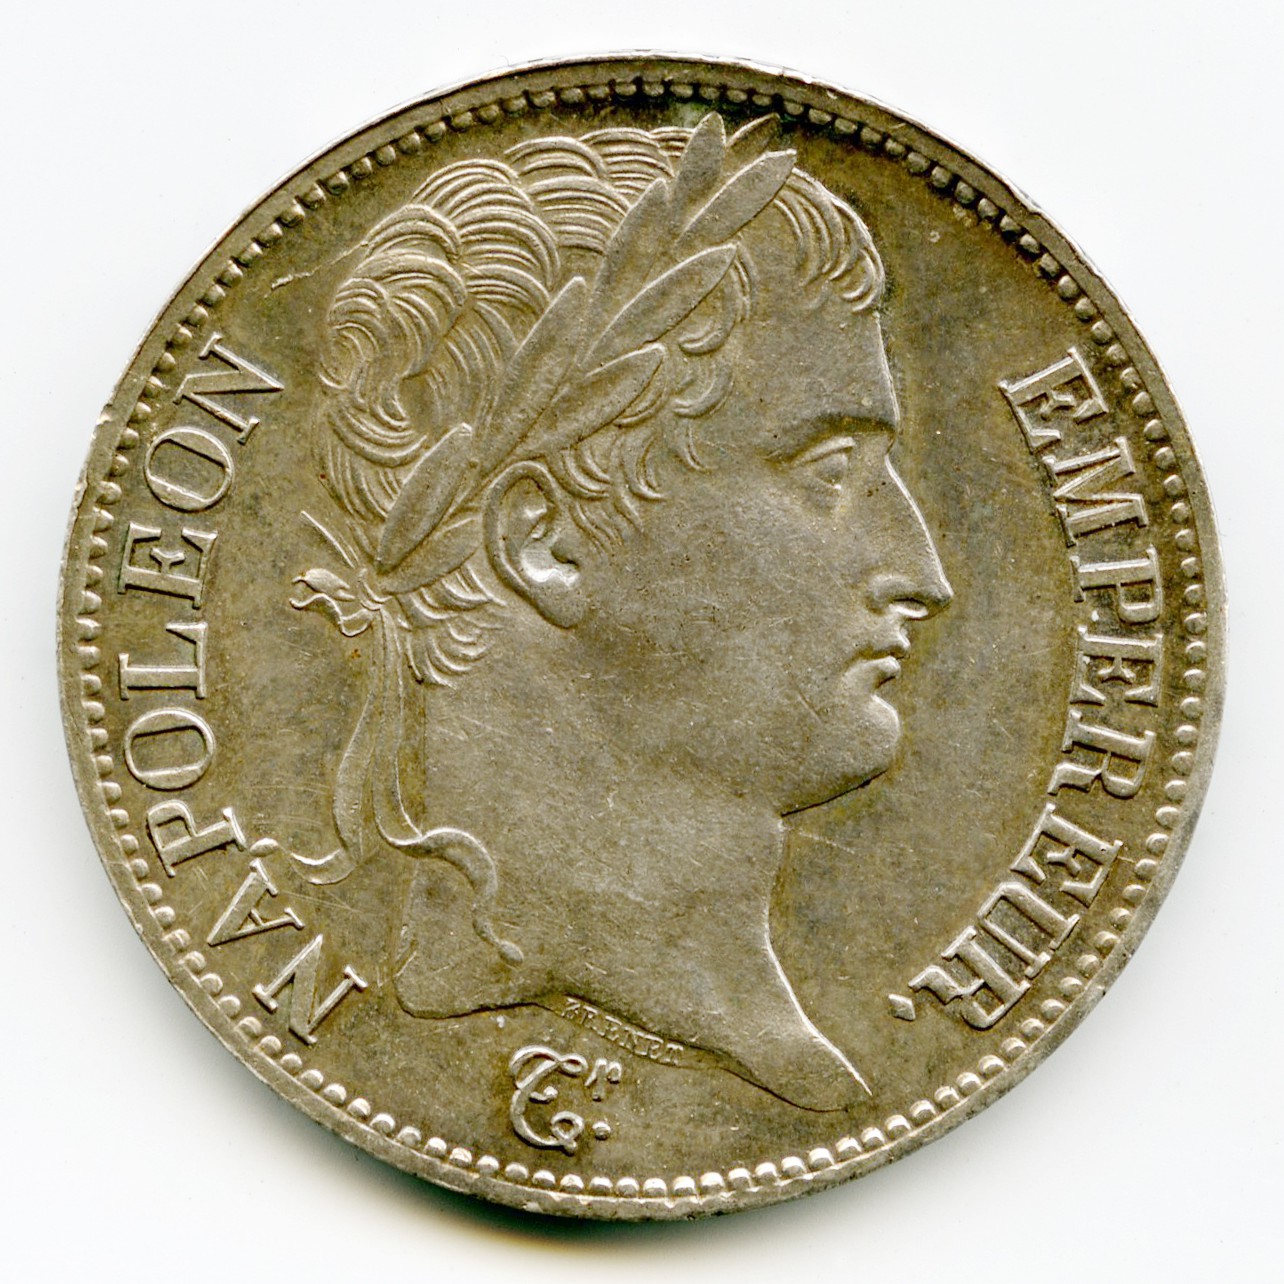 Napoléon Ier - 5 Francs - 1810 - Paris avers